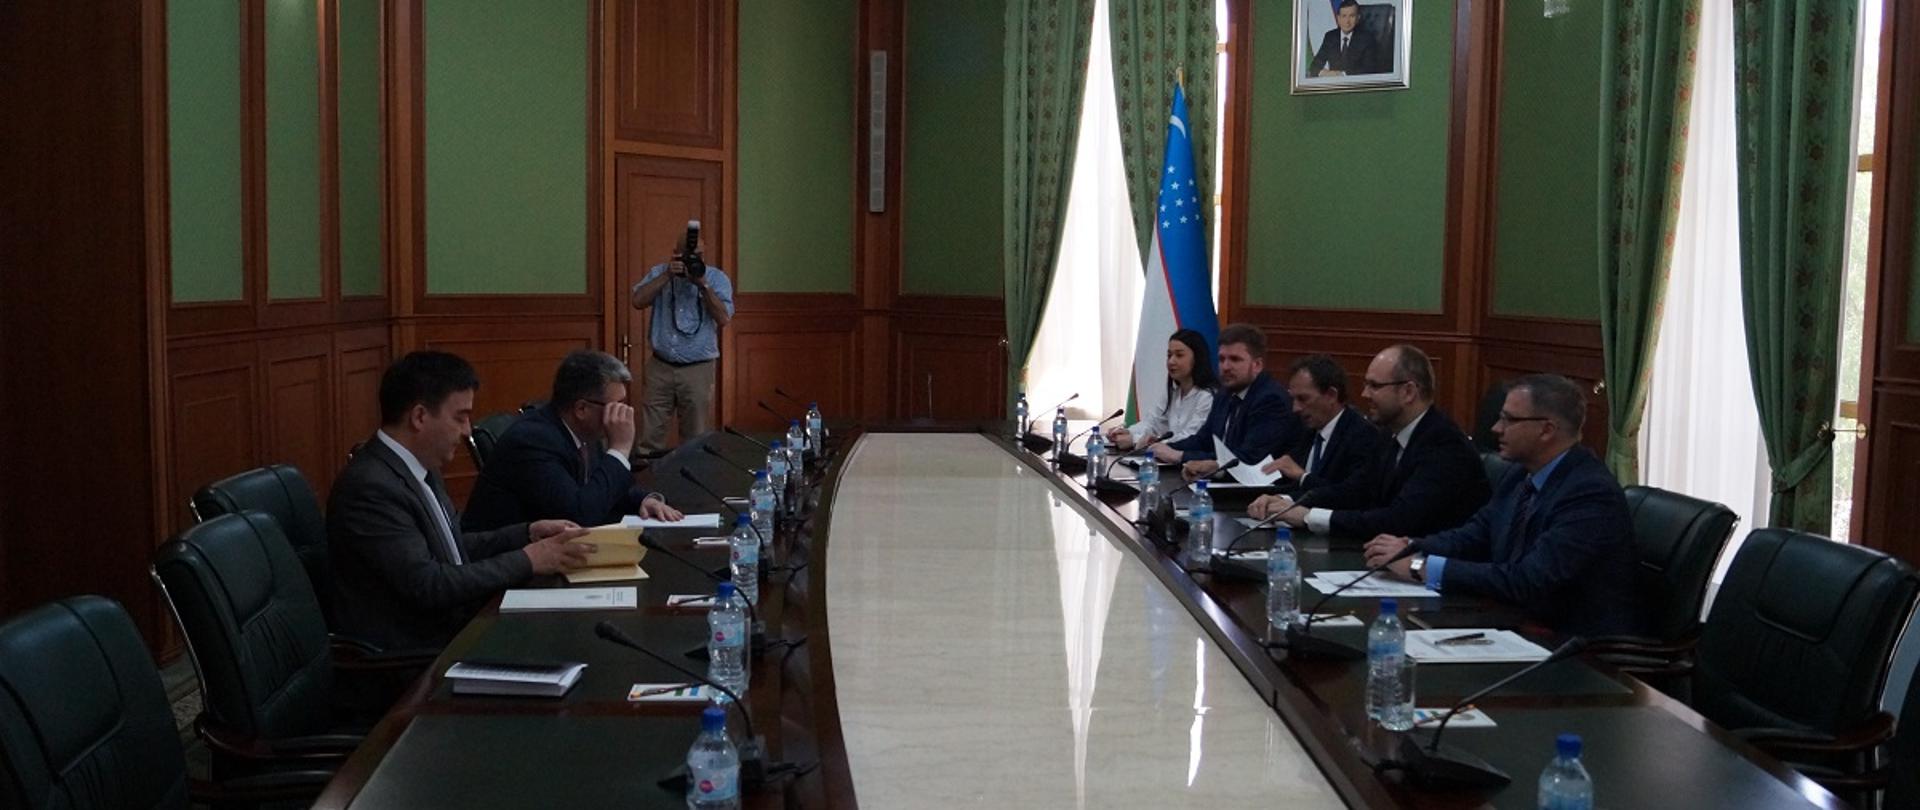 Deputy Minister Przydacz visits Central Asia